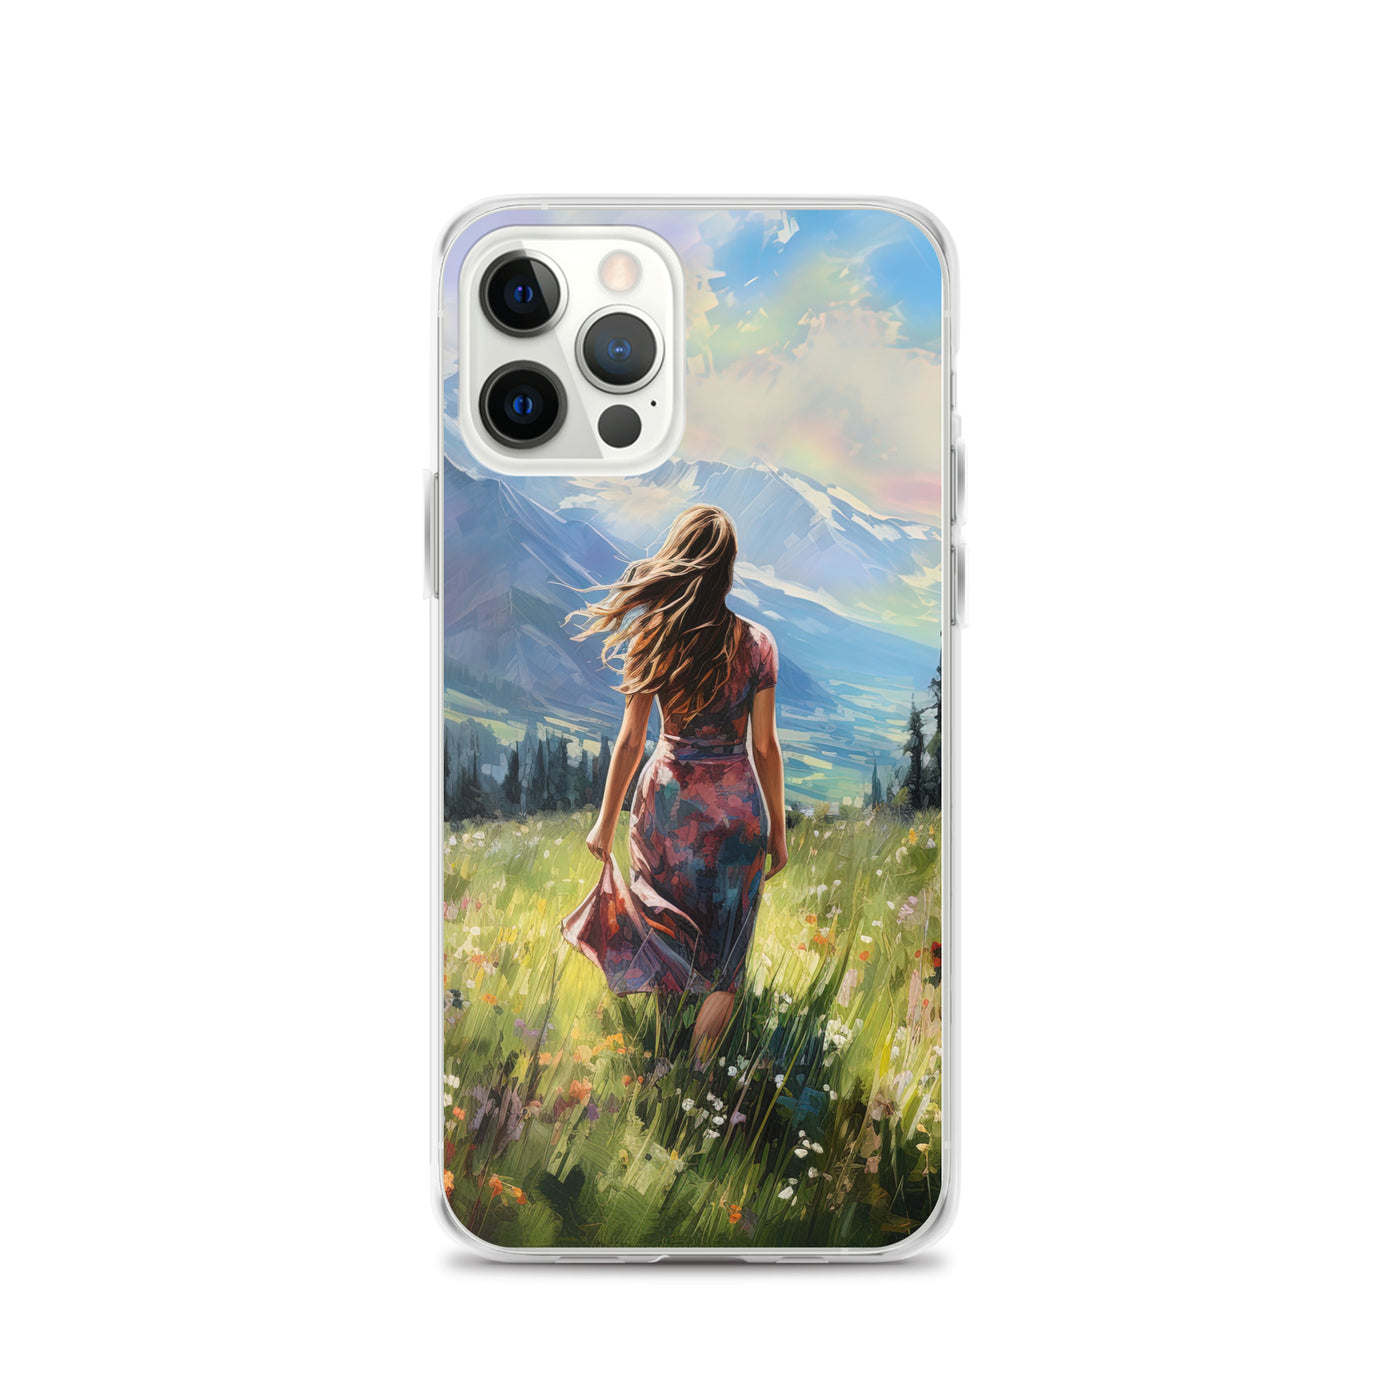 Frau mit langen Kleid im Feld mit Blumen - Berge im Hintergrund - Malerei - iPhone Schutzhülle (durchsichtig) berge xxx iPhone 12 Pro